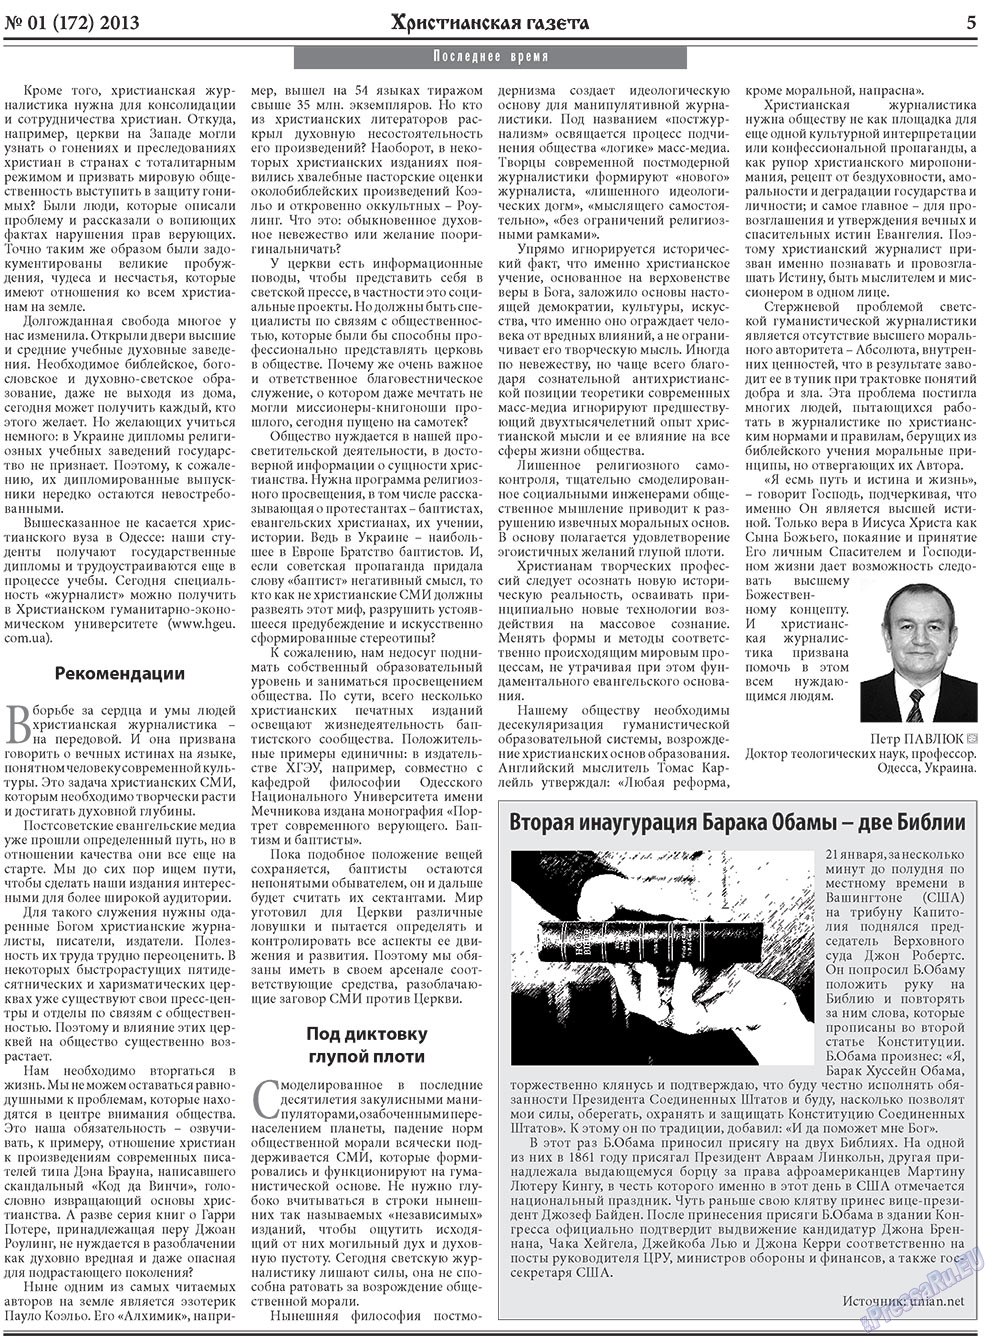 Христианская газета, газета. 2013 №1 стр.5